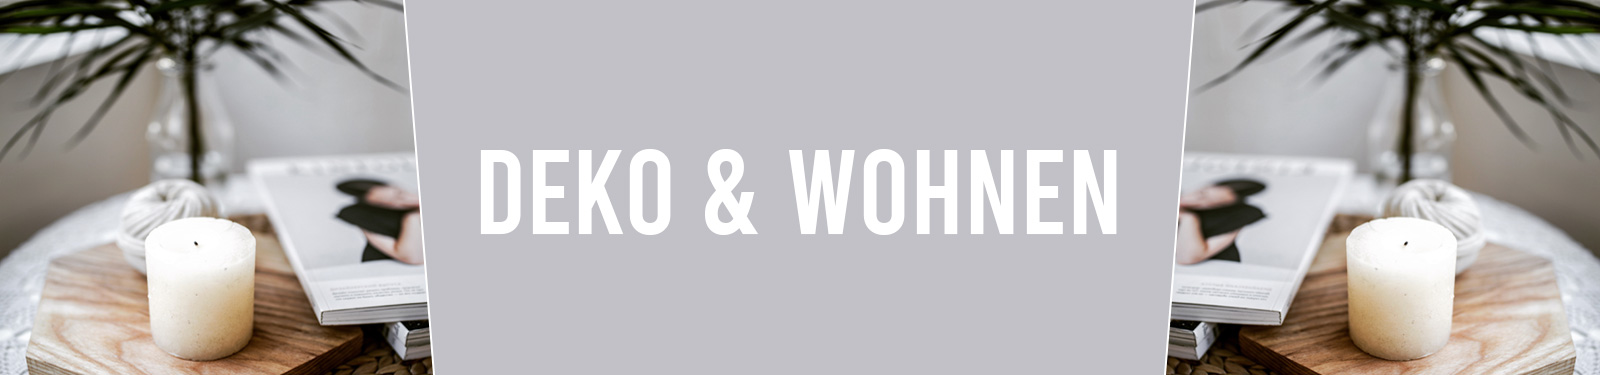 Deko & Wohnen